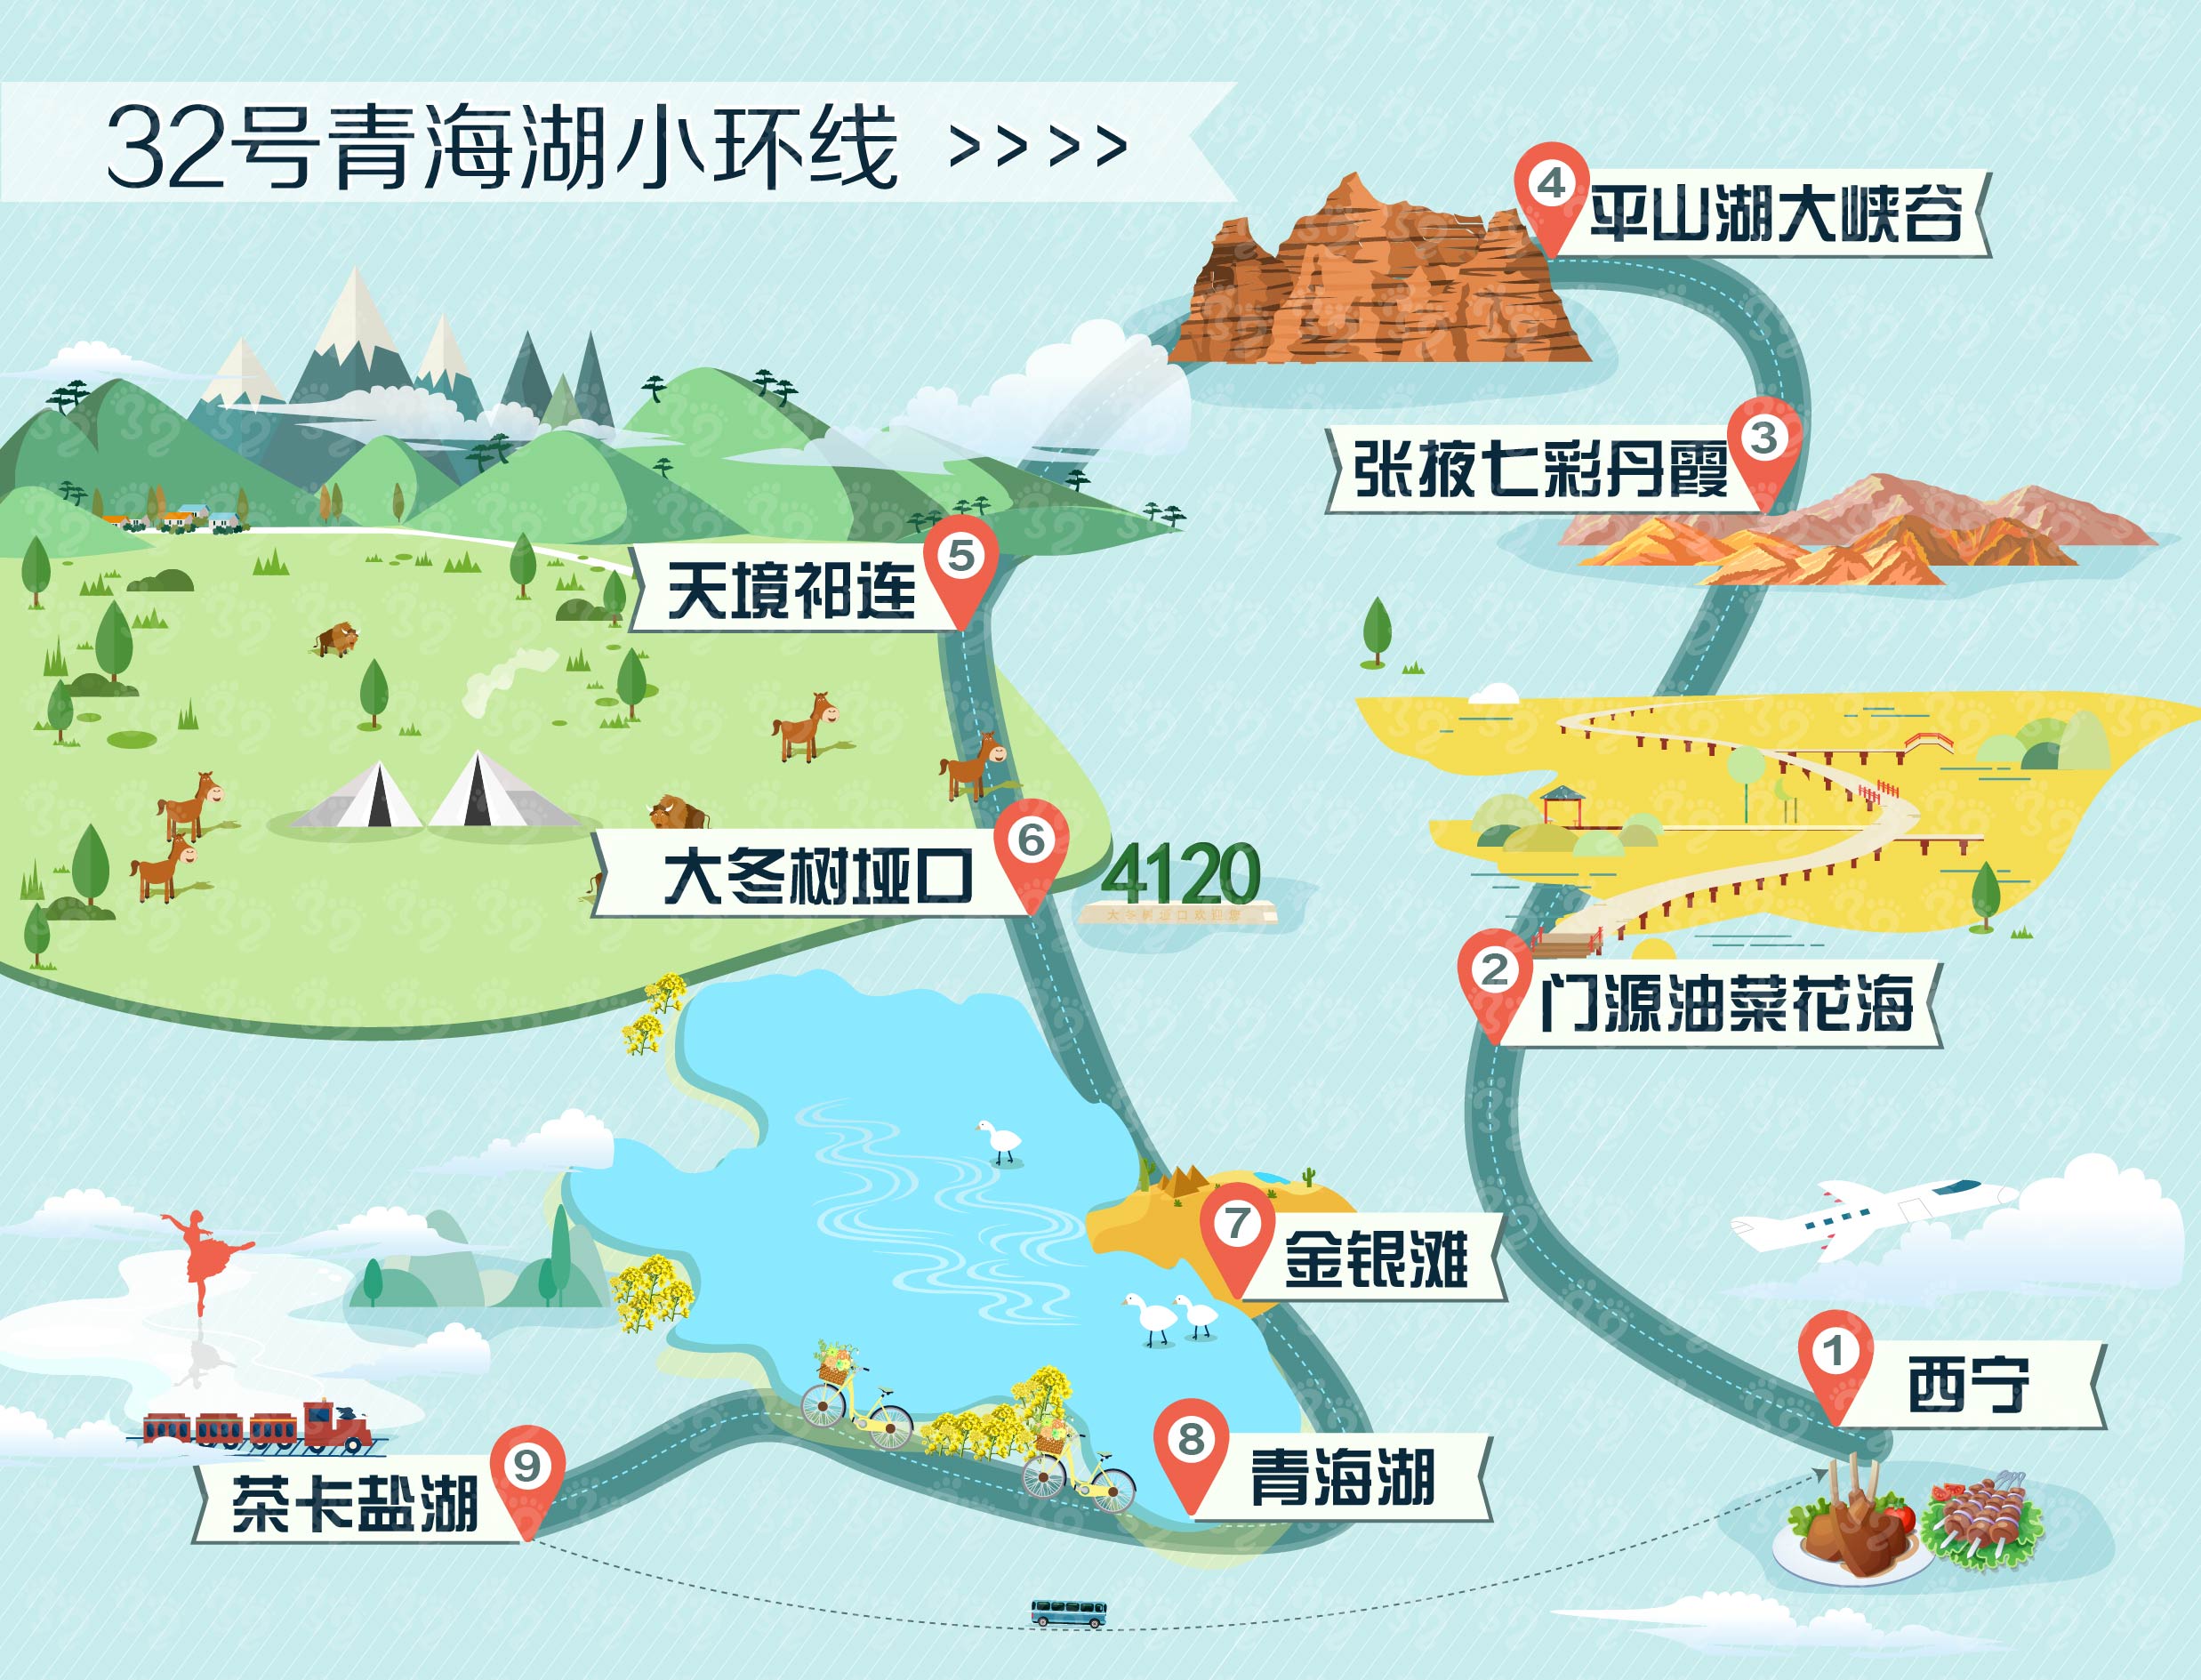 【7月暑假】青海湖小环线7天可获得学分:326